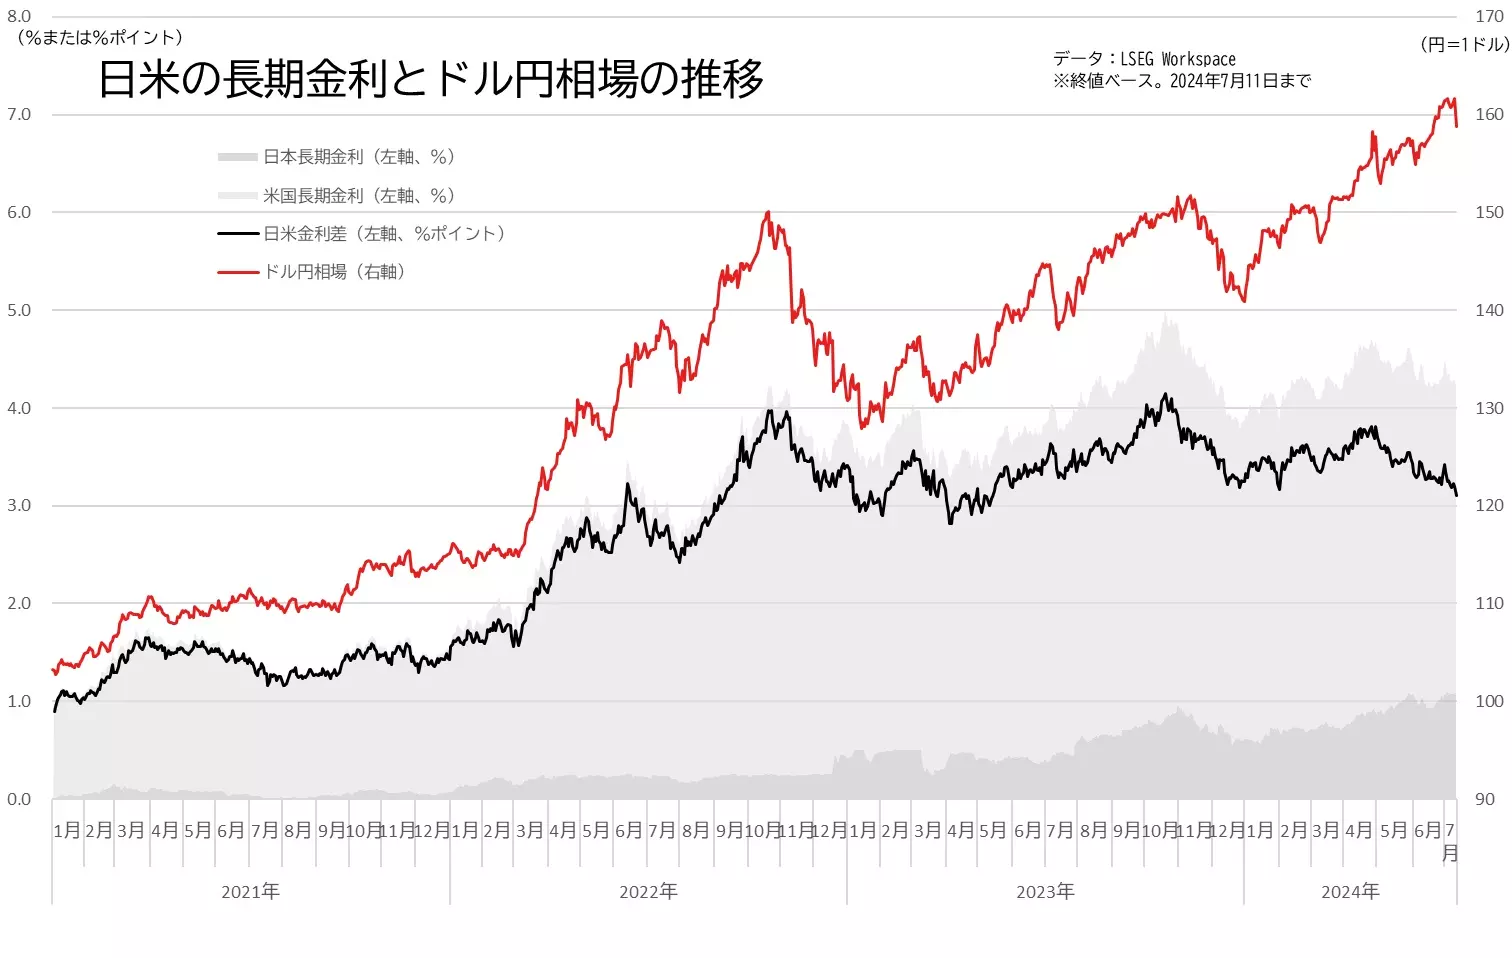 日米の長期金利差とドル円相場の推移のグラフ